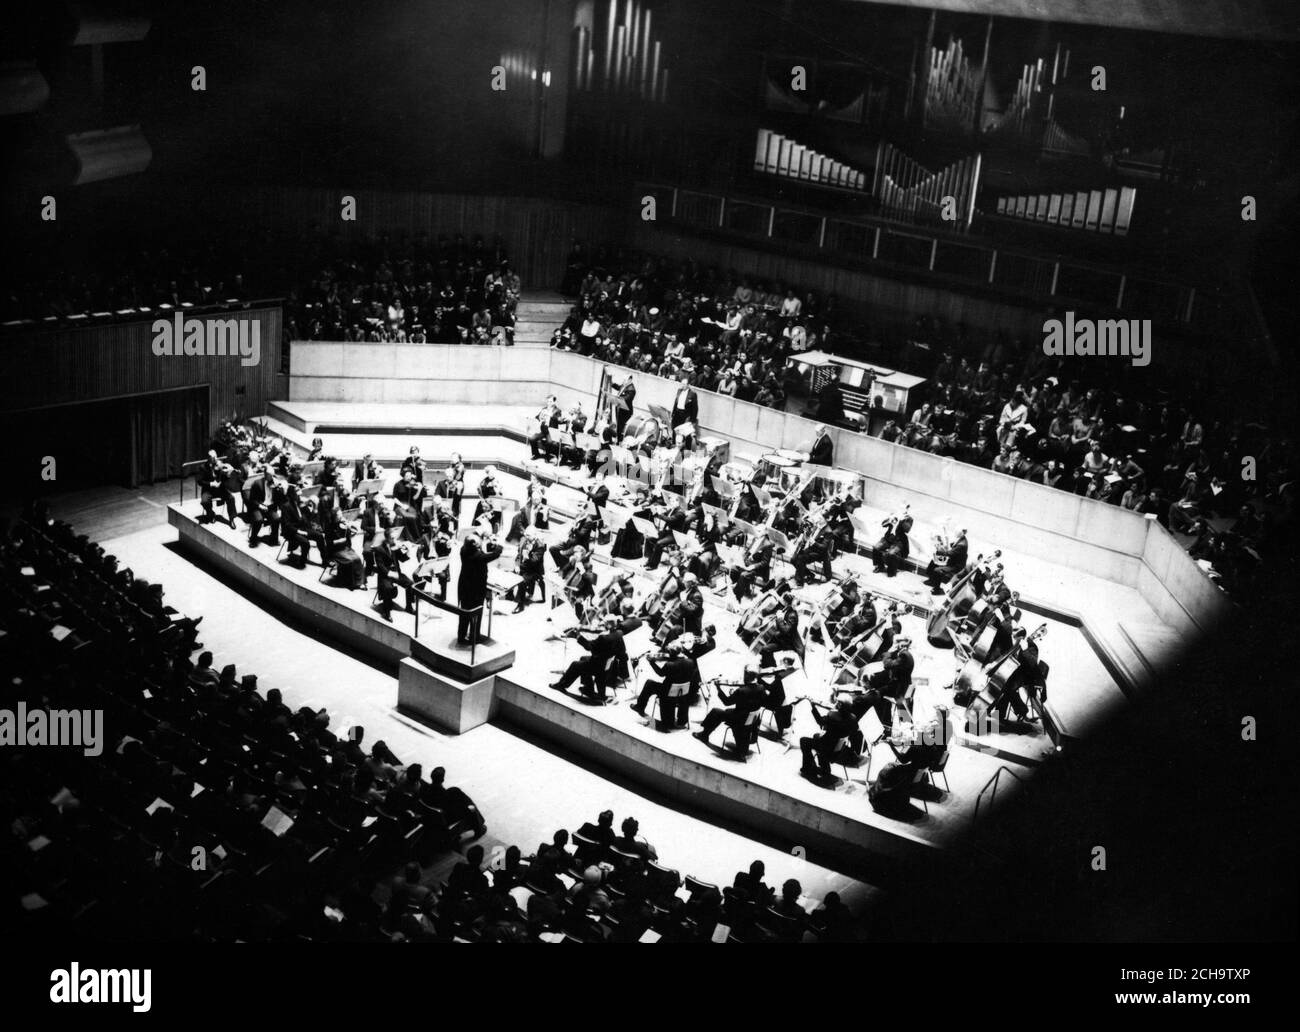 Concert donné par l'Orchestre symphonique de Bournemouth sous son chef, Charles Groves, au Royal Festival Hall, Londres. *numérisé à partir du contact. NEG corrompu Banque D'Images